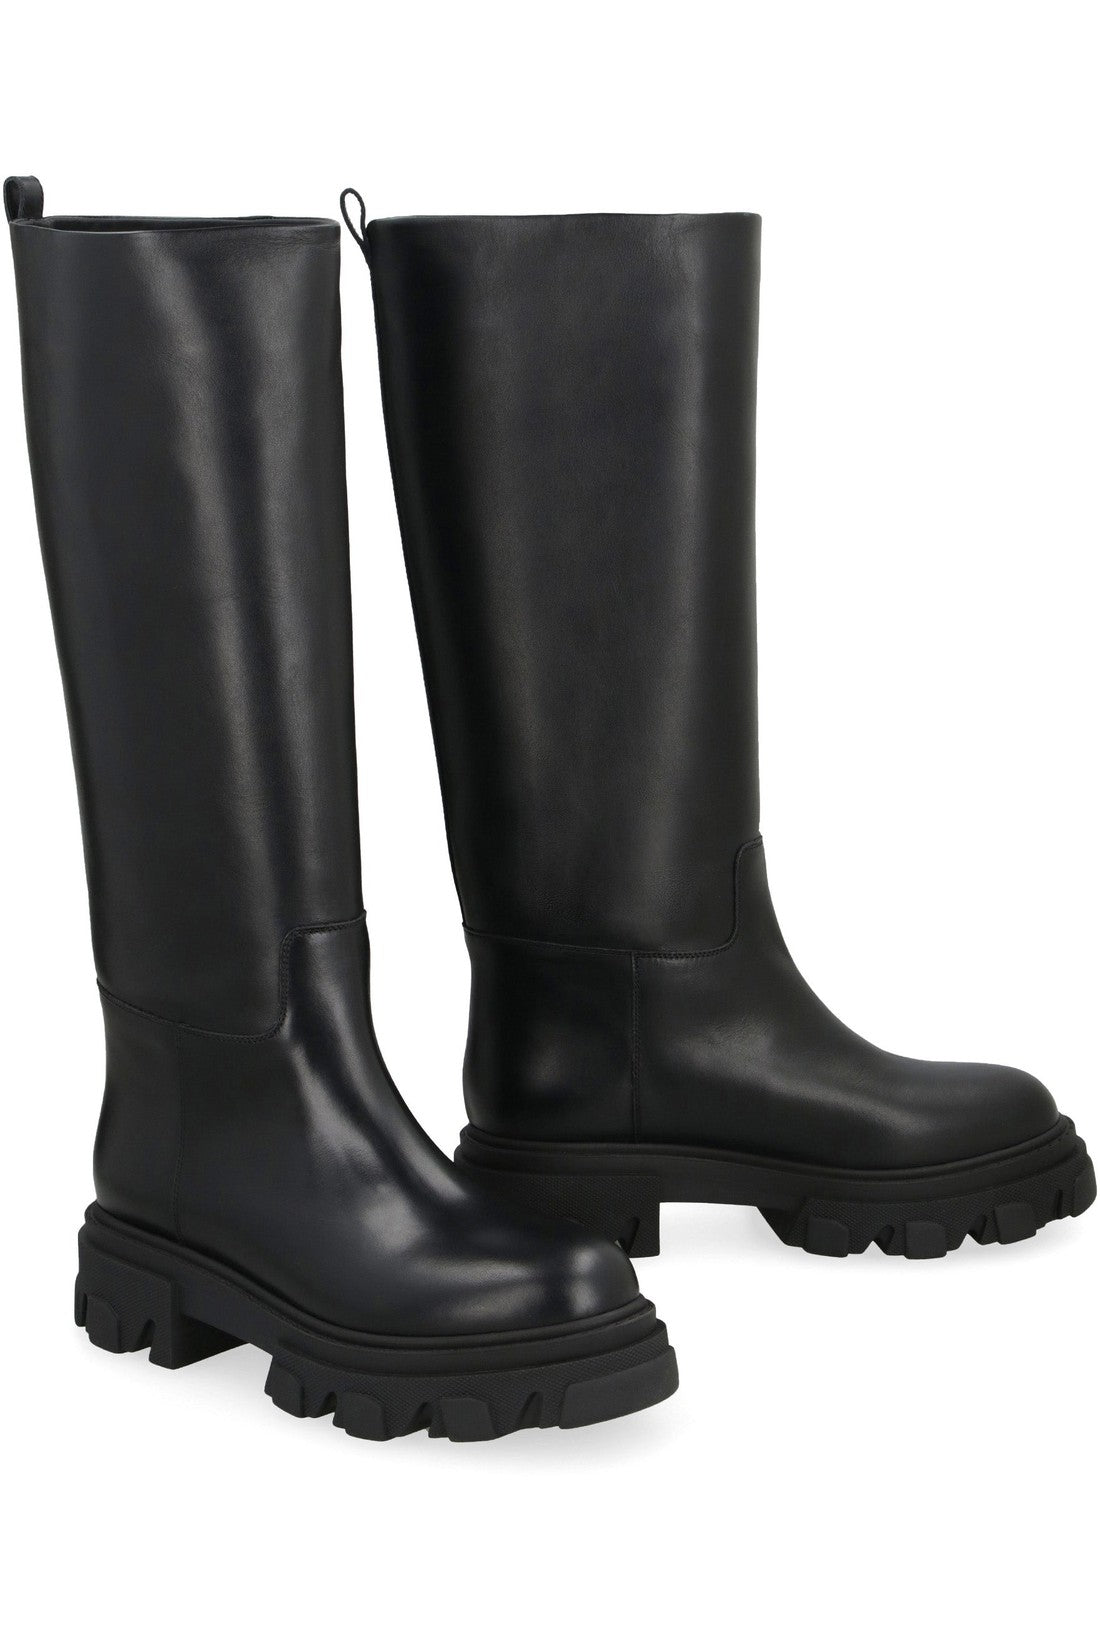 GIA BORGHINI-OUTLET-SALE-Perni 07 leather boots-ARCHIVIST